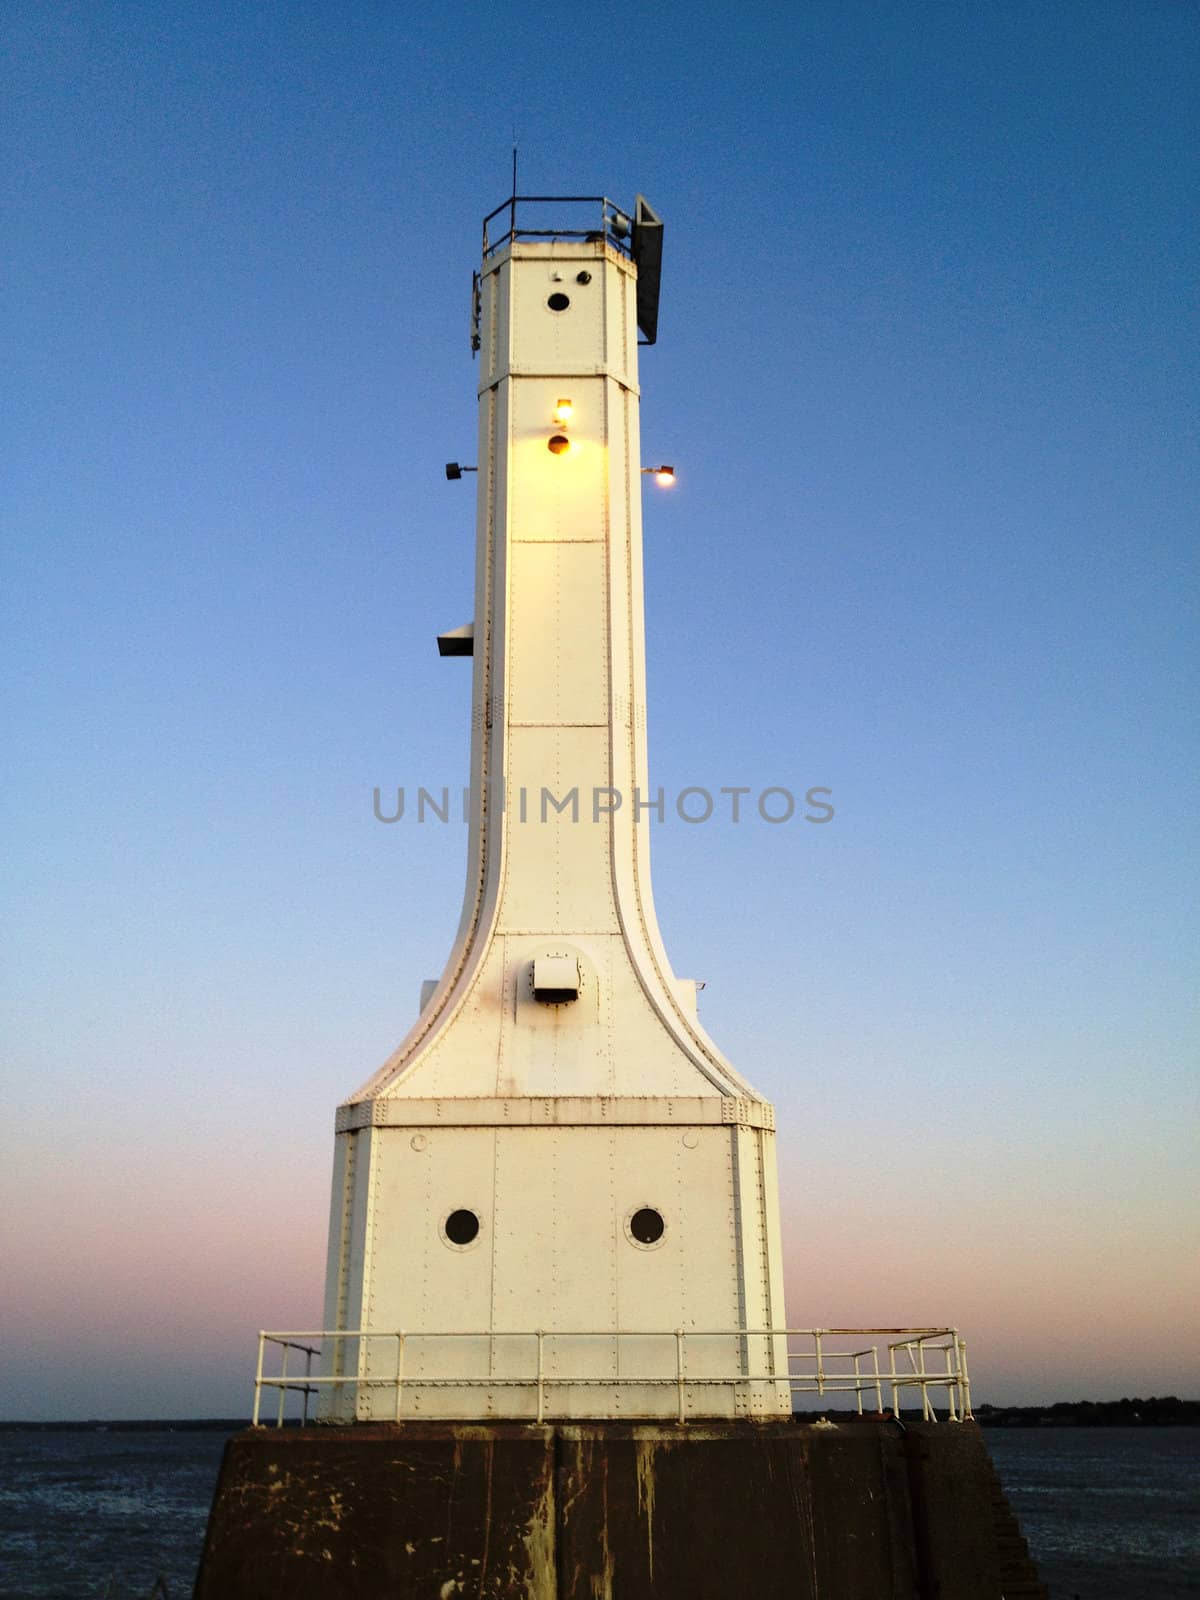 Huron Ohio Lighthouse